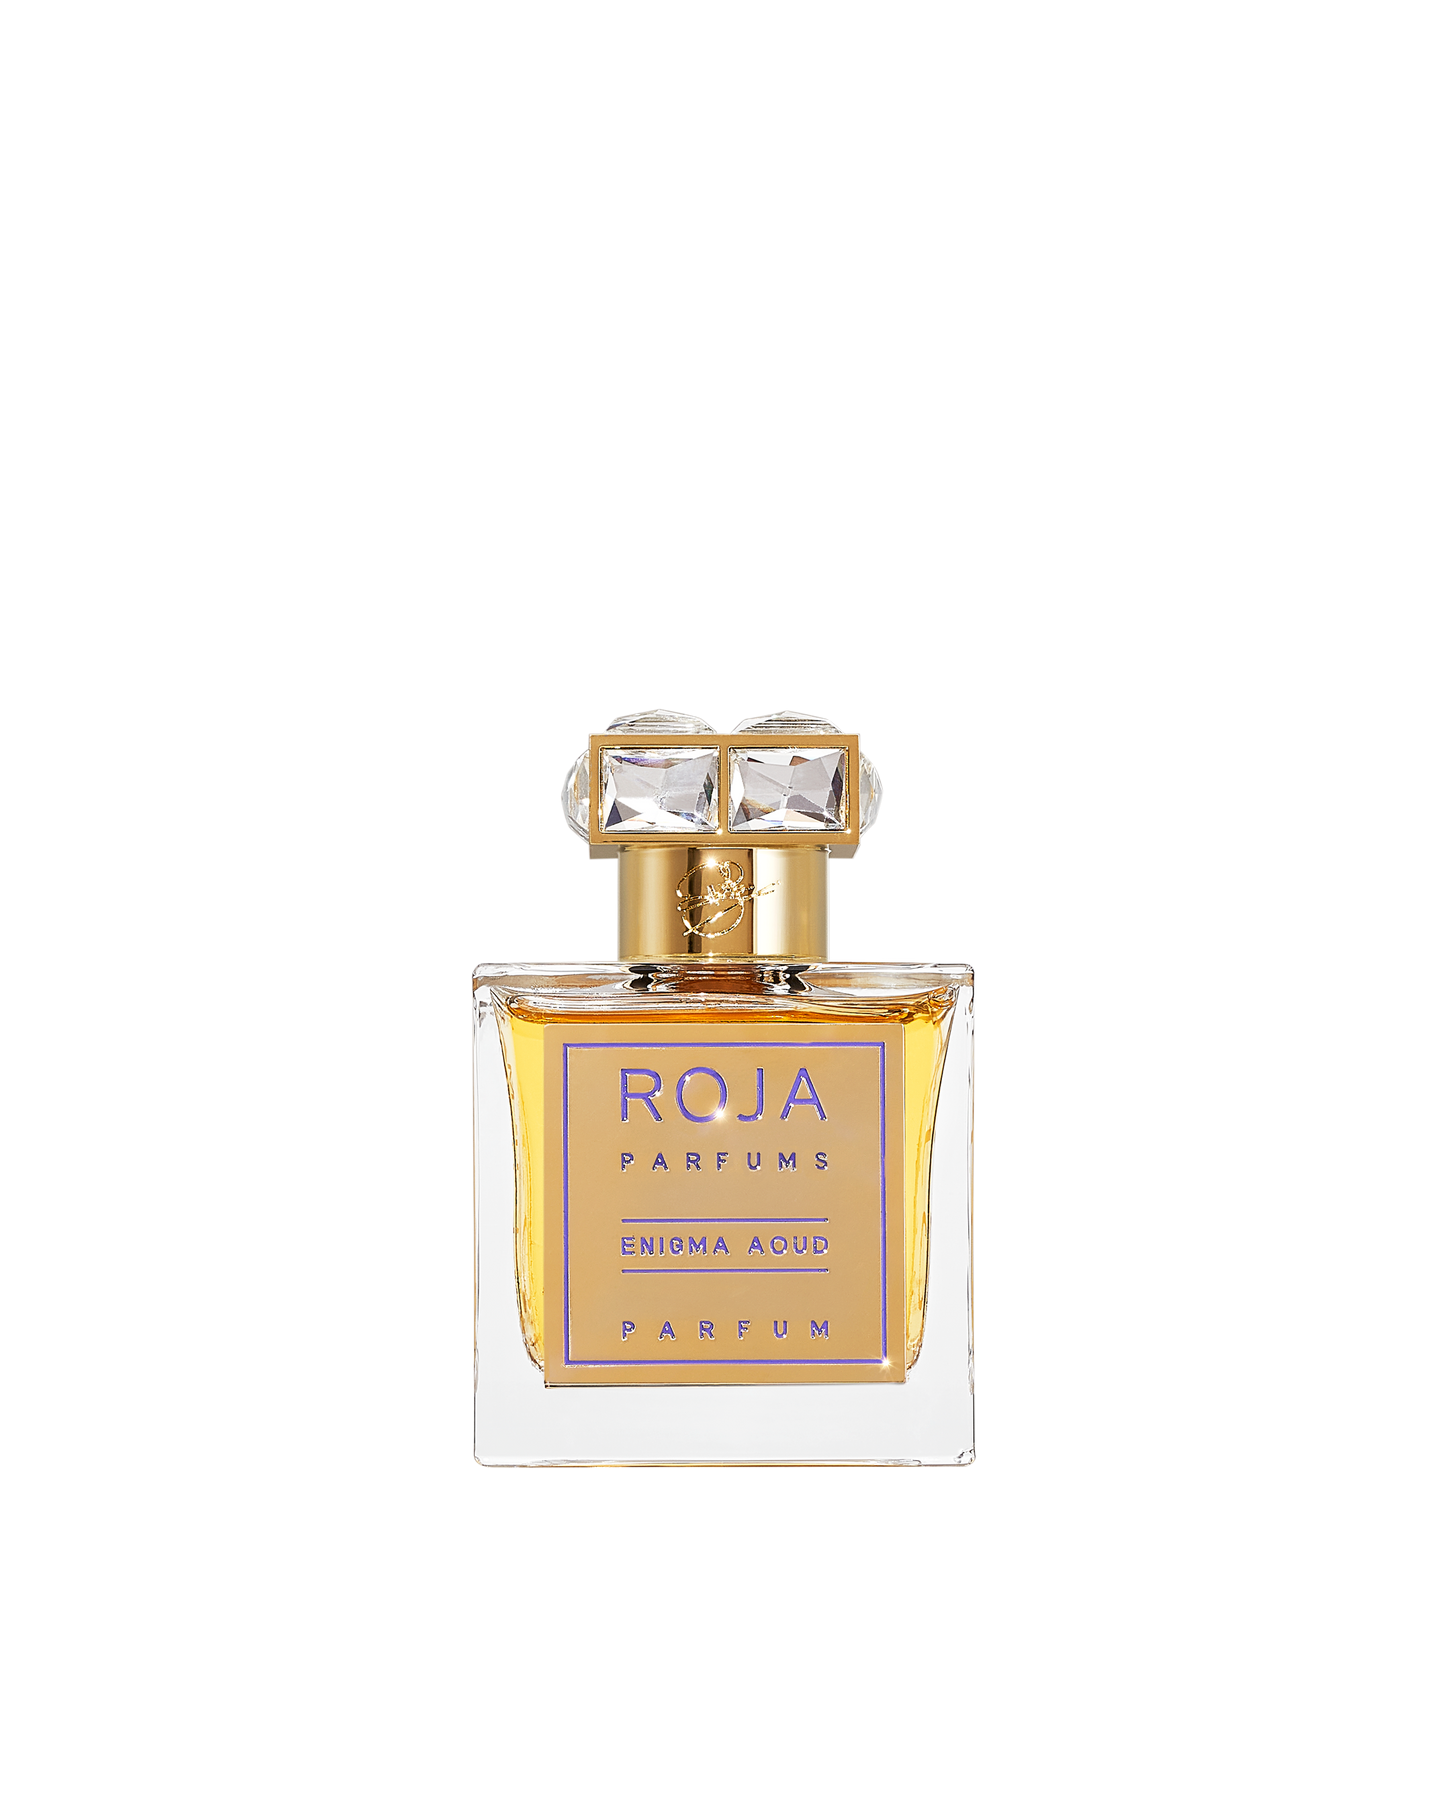 Enigma Aoud Parfum Roja Parfums 100ml